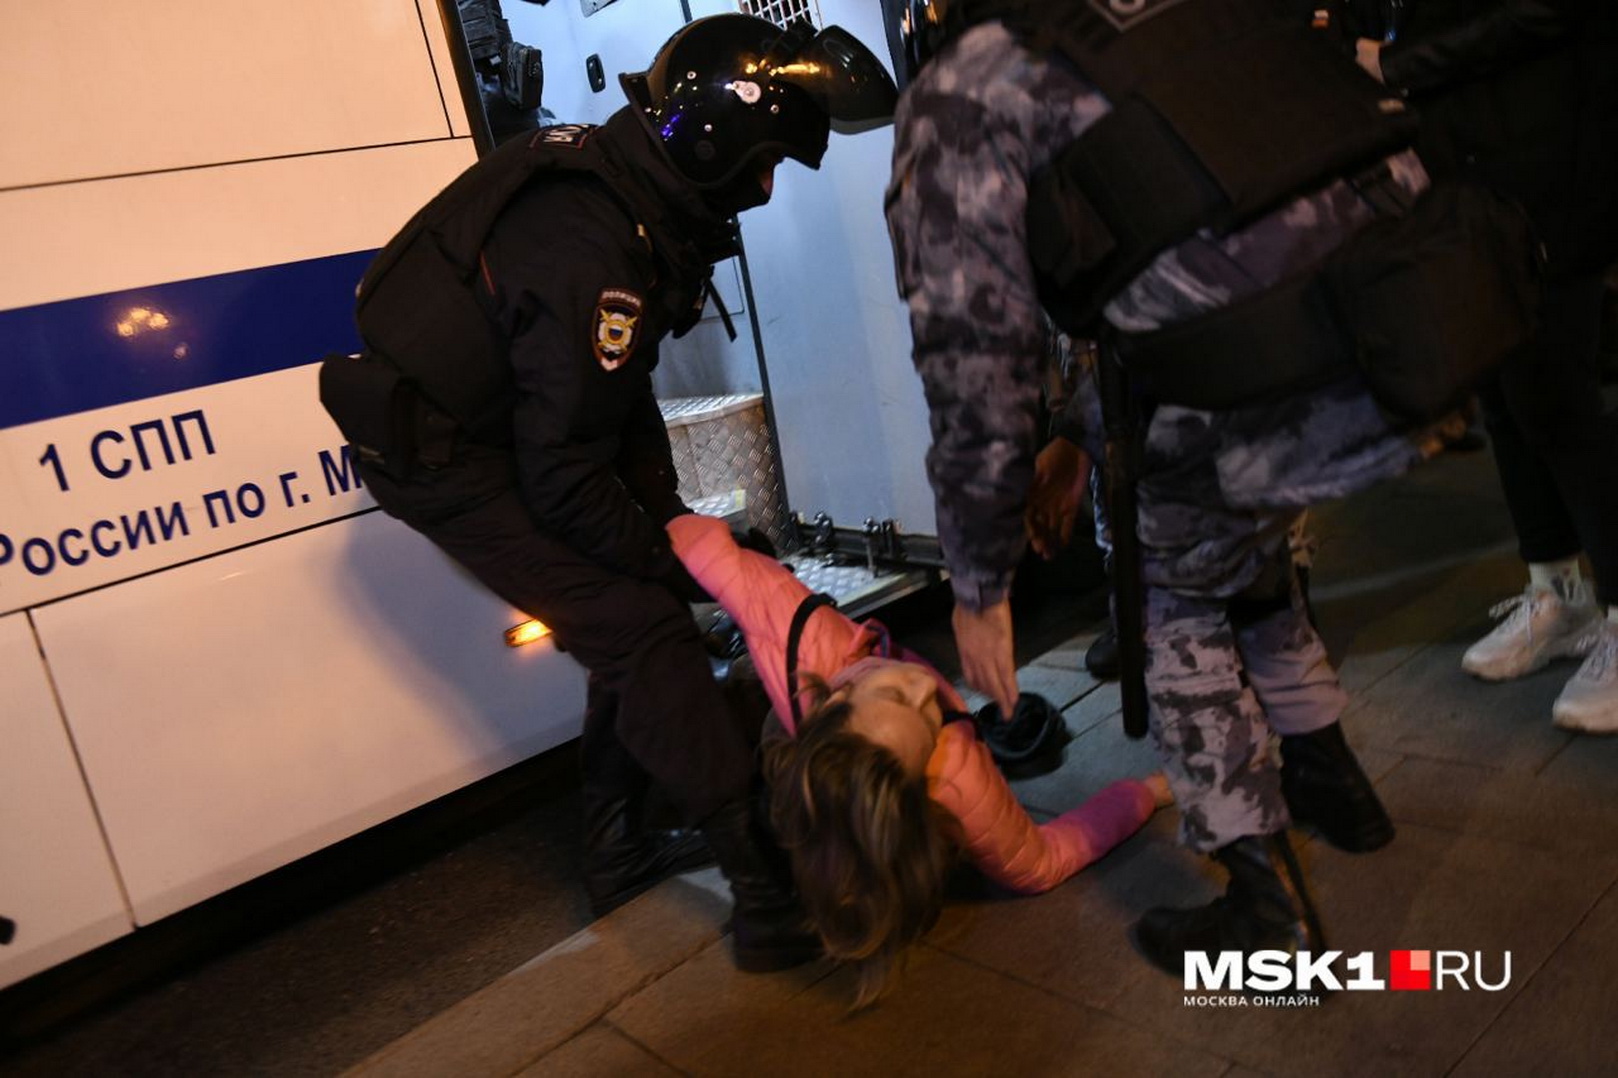 Maskvoje policija sulaiko protestuojančiuosius, smurtaujama net prieš moteris. Anksčiau Arbate susirinkusi minia skandavo „Putiną į apkasus“. SOCIALINIŲ TINKLŲ nuotr.